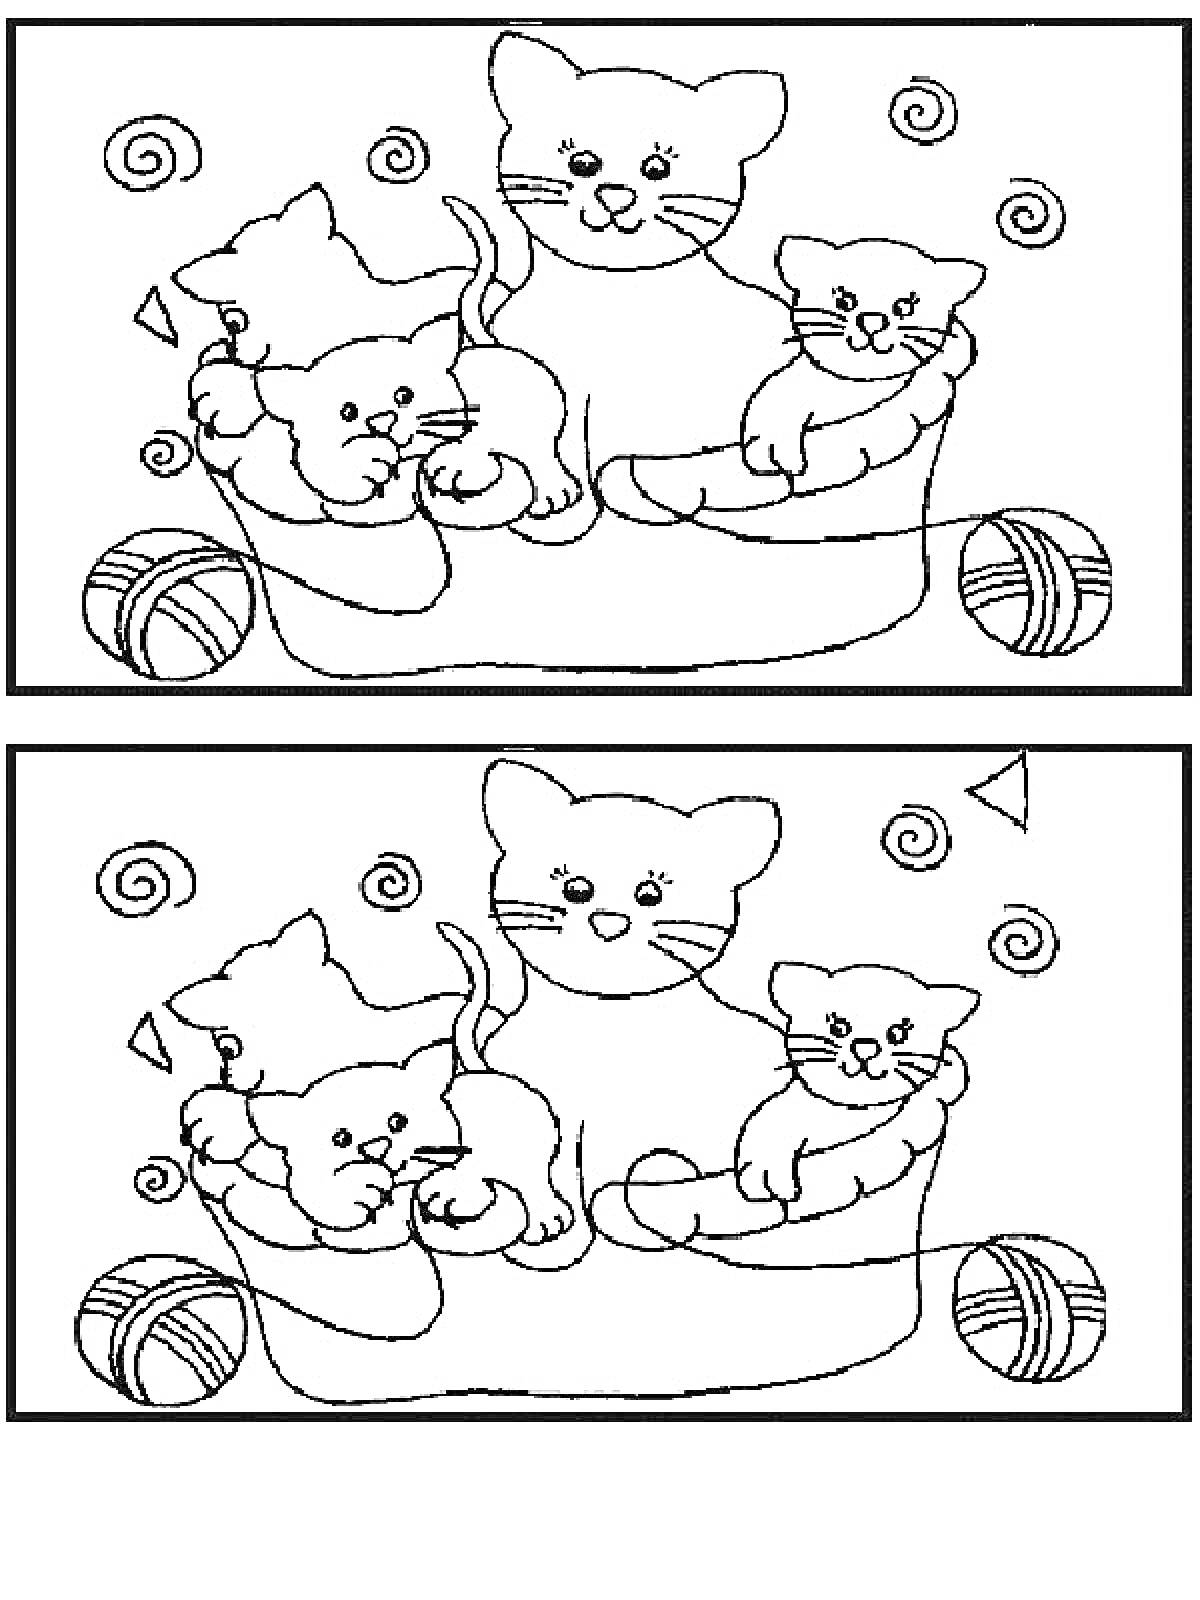 Семья кошек в люльке с клубками и завитками - найдите отличия